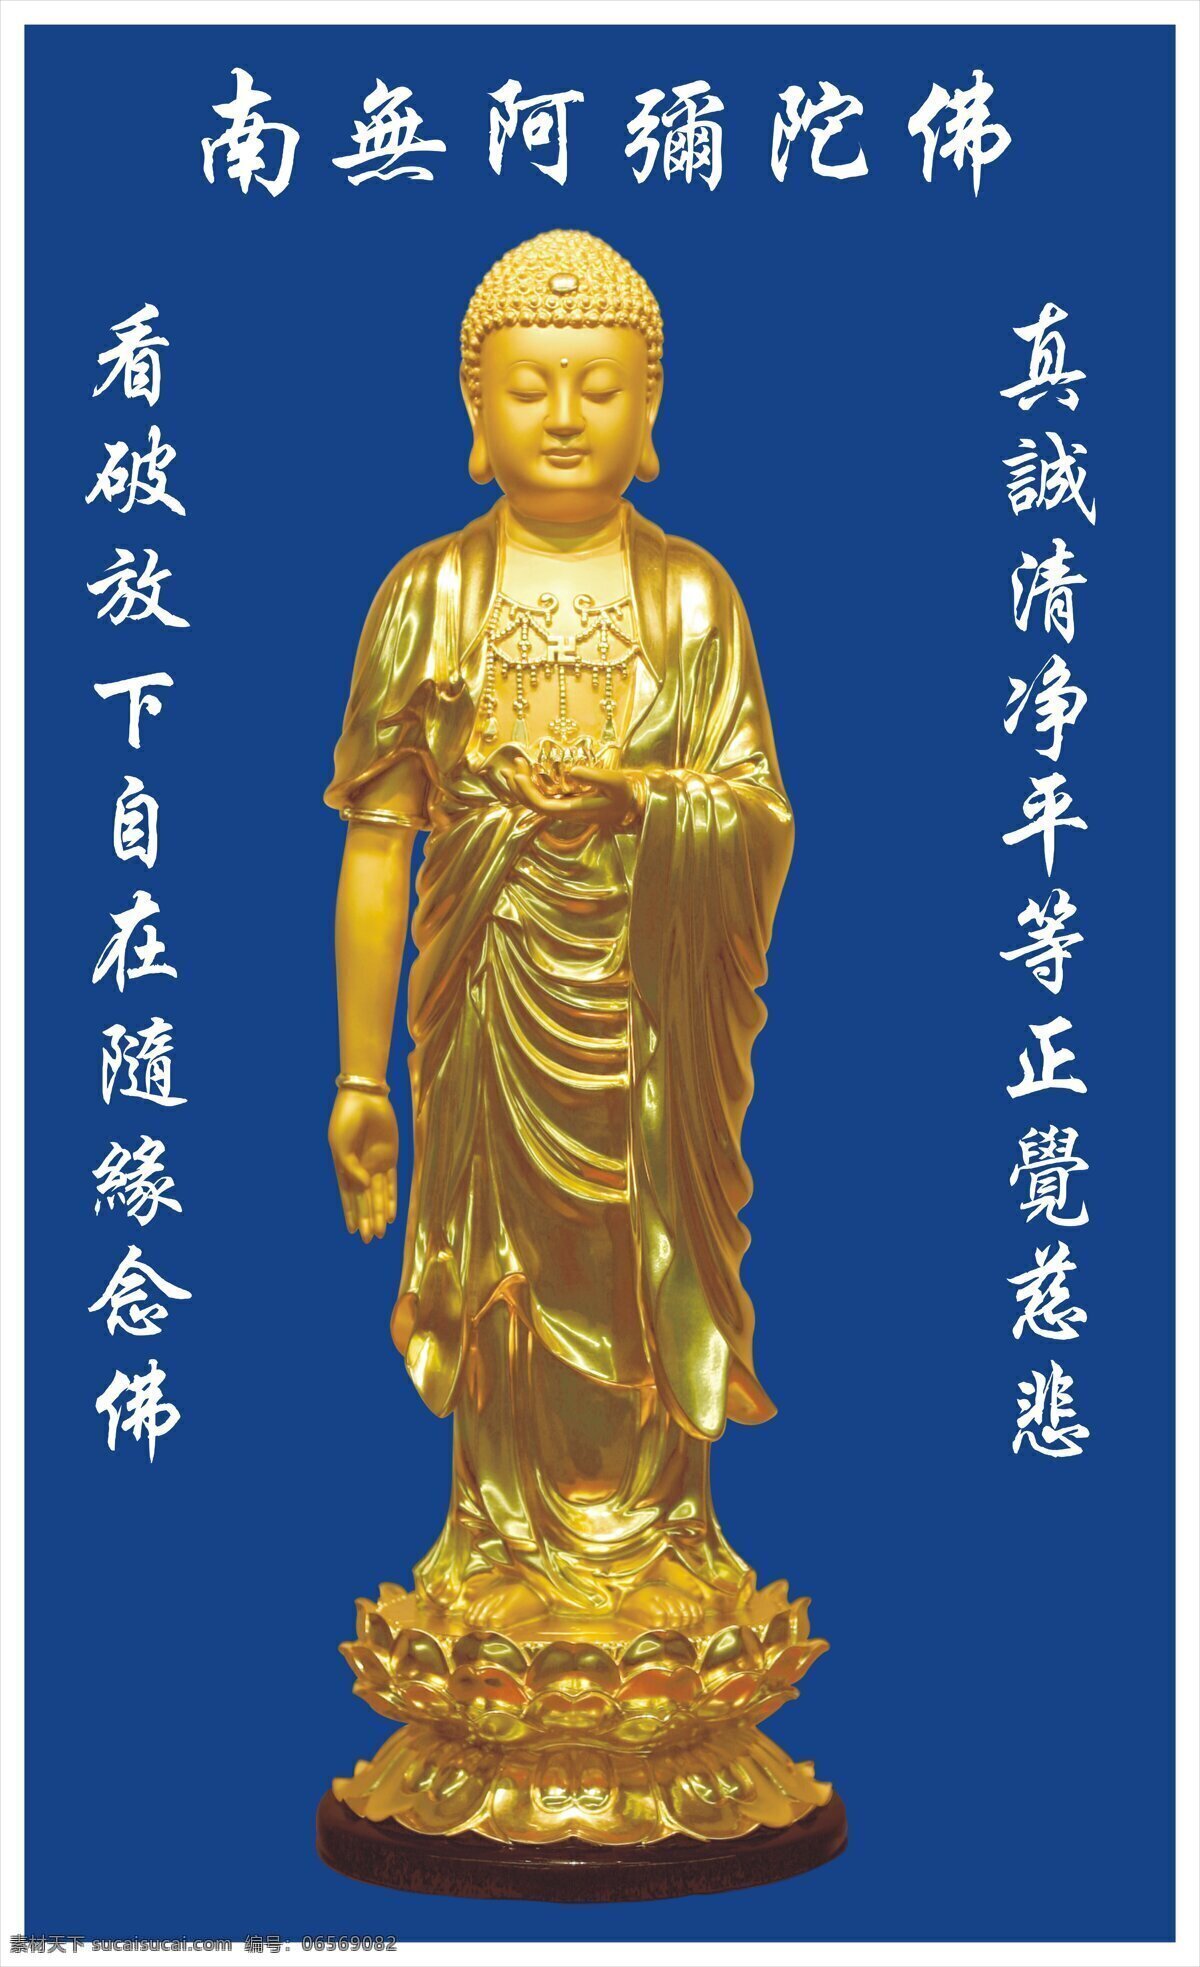 阿弥陀佛 佛教 佛像 修心 念佛佛 文化艺术 宗教信仰